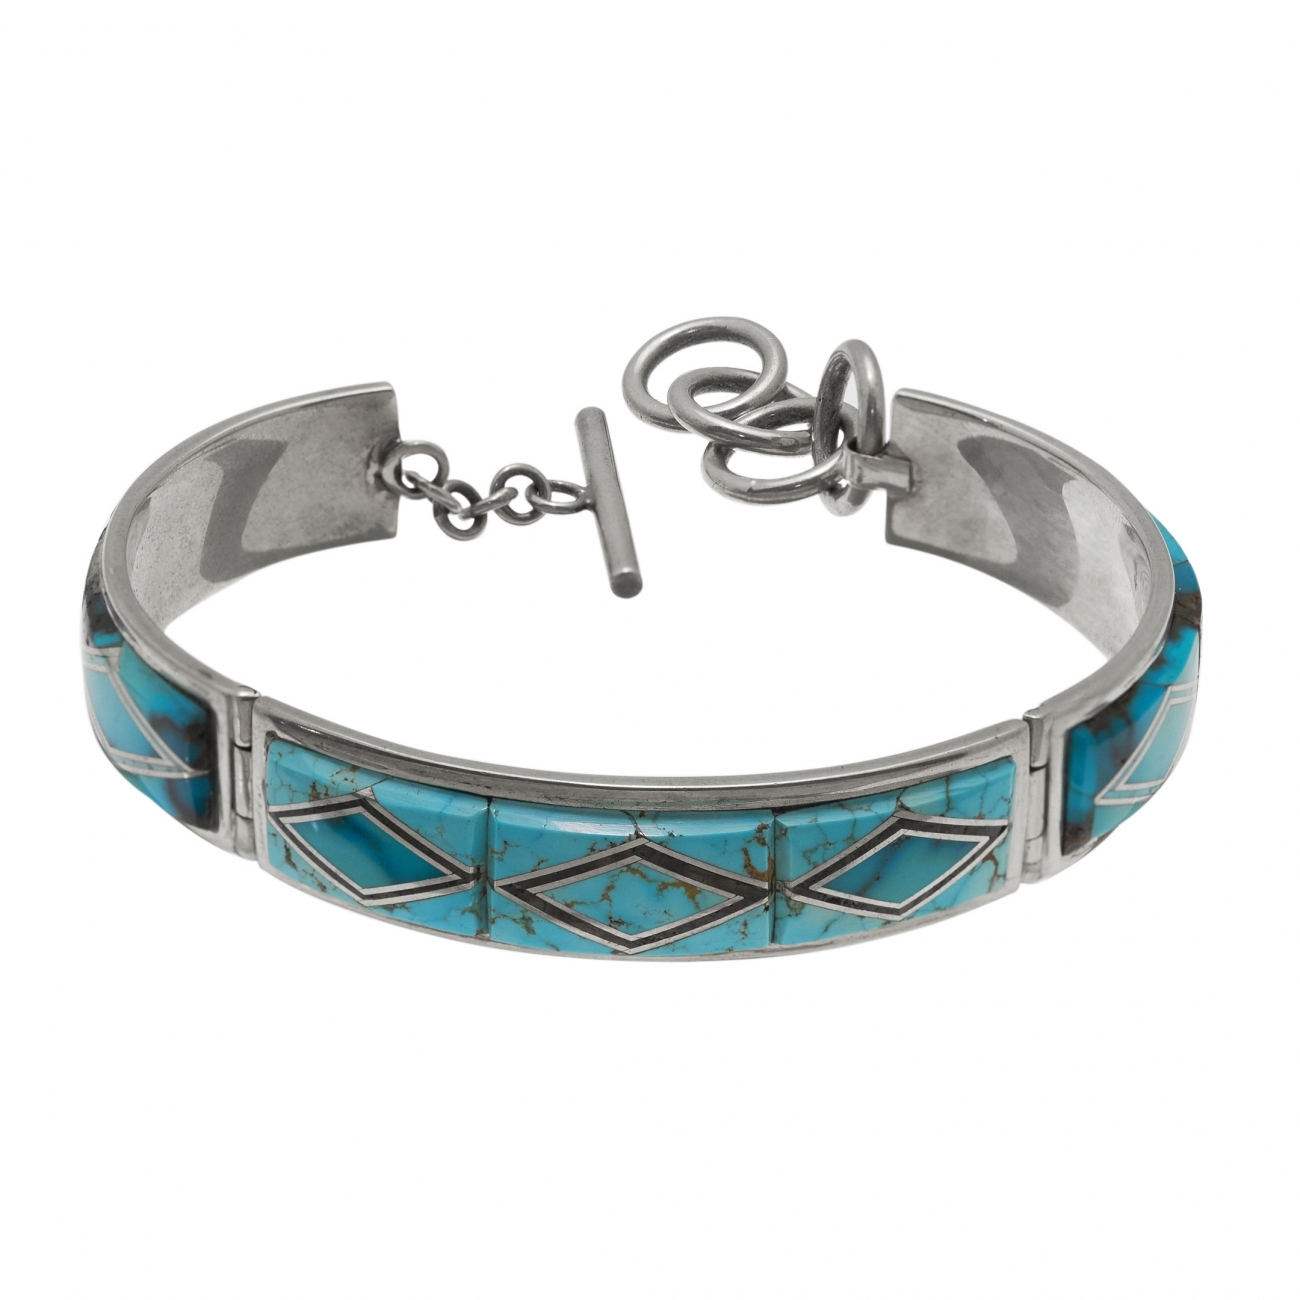 Superbe bracelet MIS24 en turquoise et argent - Harpo Paris